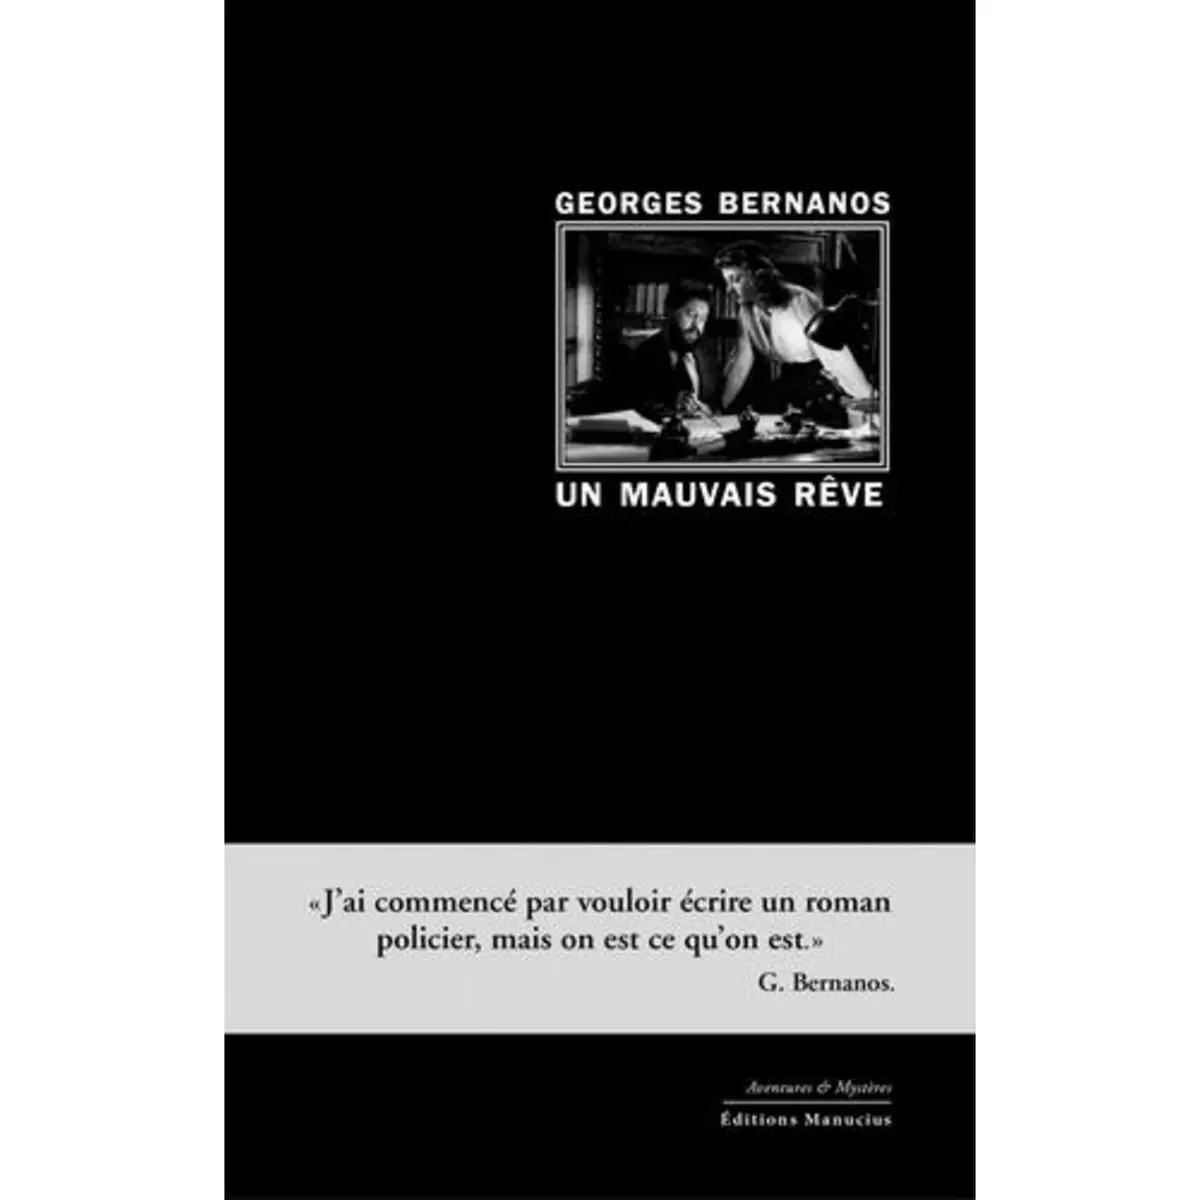  UN MAUVAIS REVE, Bernanos Georges